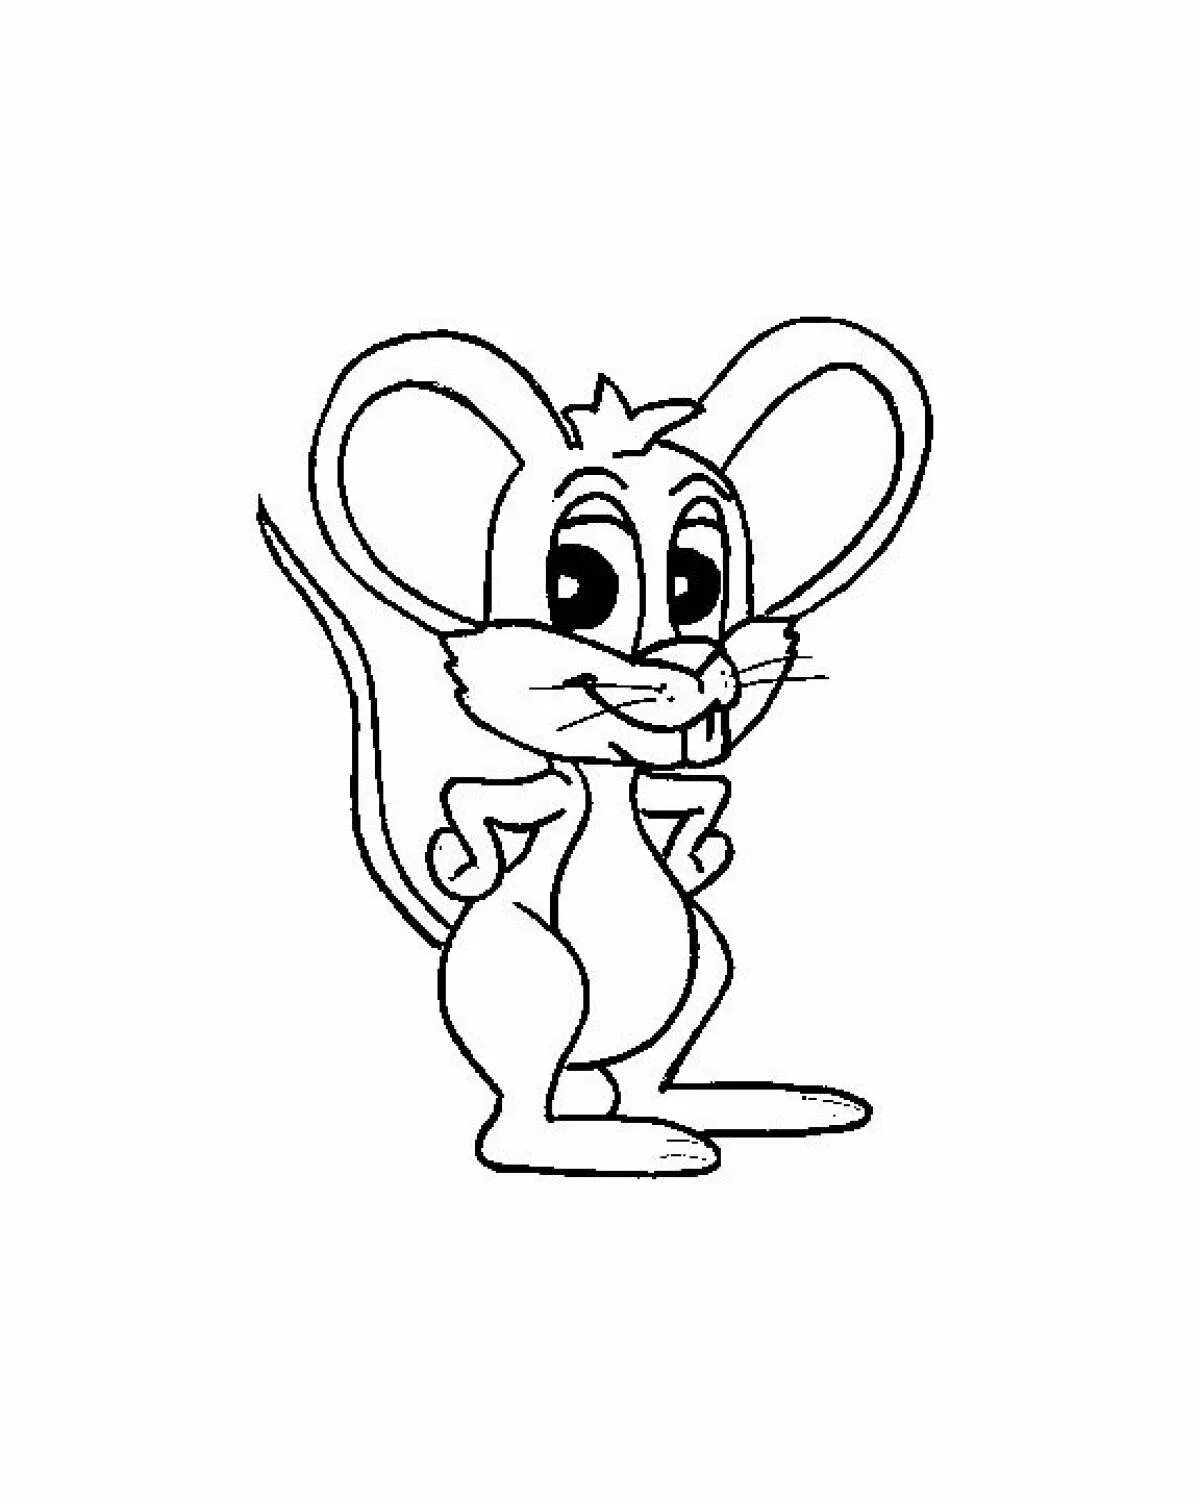 Раскраска мышка. Мышь раскраска для детей. Мышонок раскраска для детей. Мышка для раскрашивания детям. Раскраска мышь распечатать